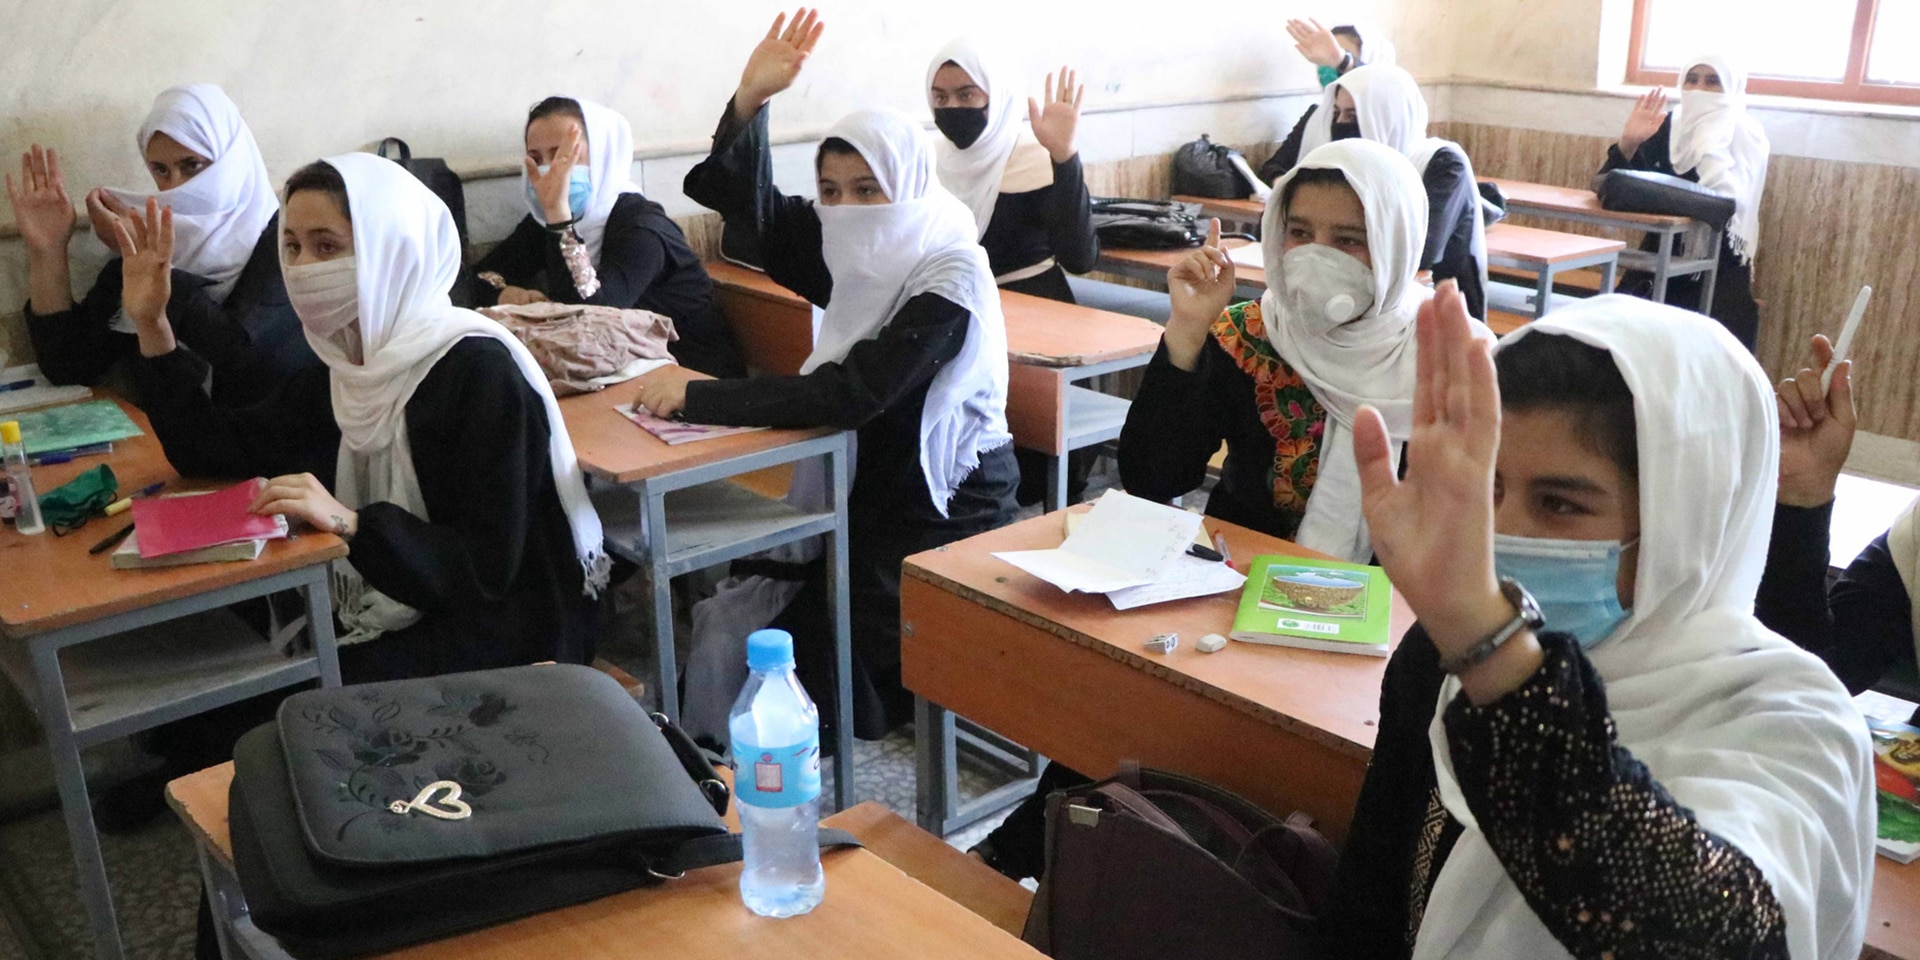 Ein Klassenzimmer in Afghanistan mit Mädchen, die die Hand heben, um eine Antwort zu geben.